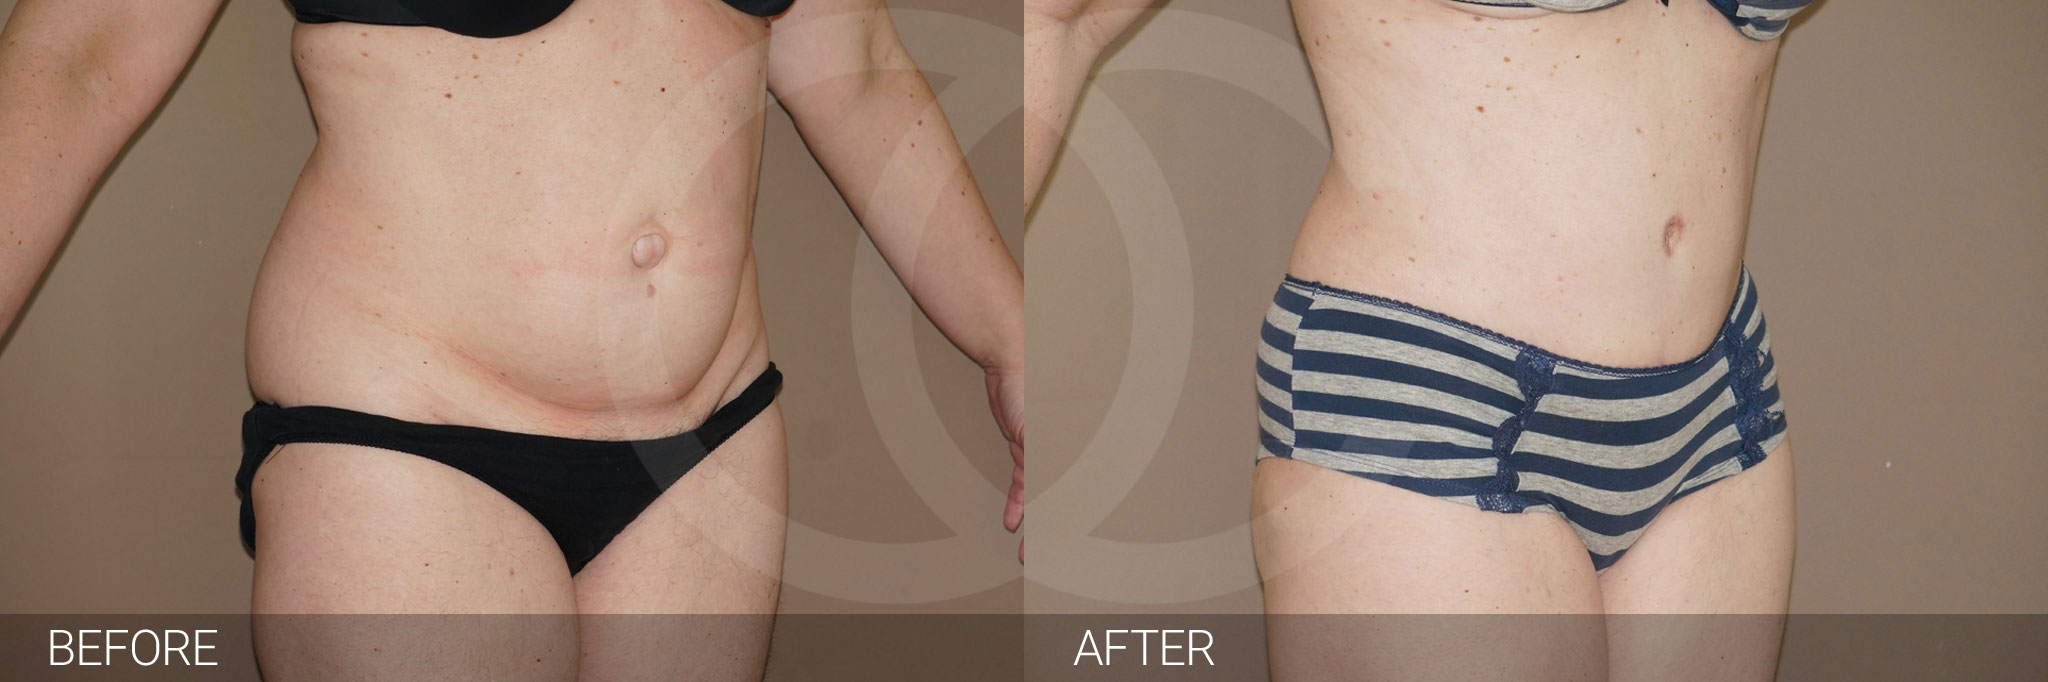 Antes y después Abdominoplastia con liposucción fotos reales de pacientes 7.2 | Ocean Clinic Marbella Madrid